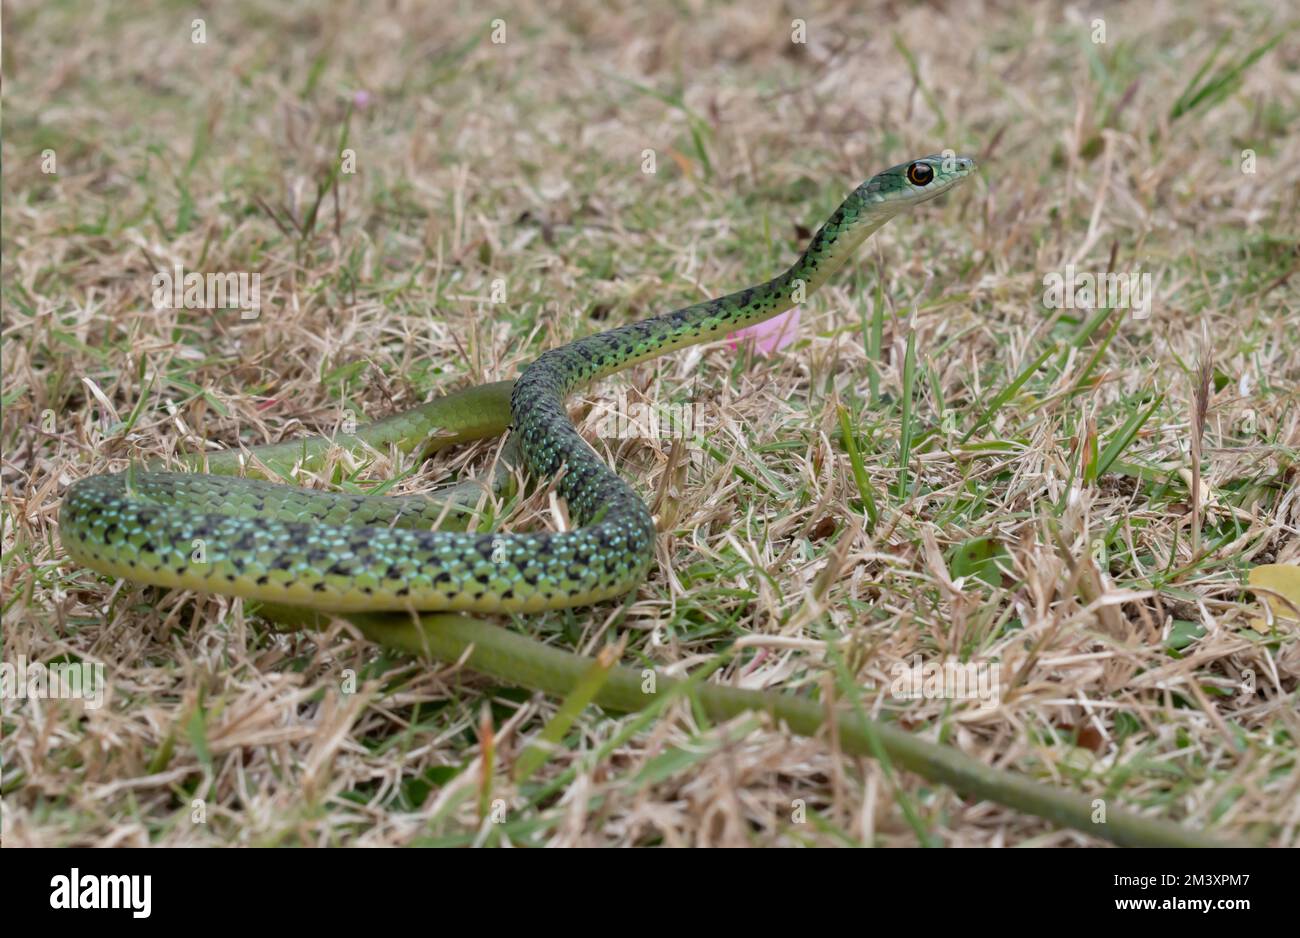 Magnifique serpent de brousse à pois (Philothamnus semivariegatus) Banque D'Images